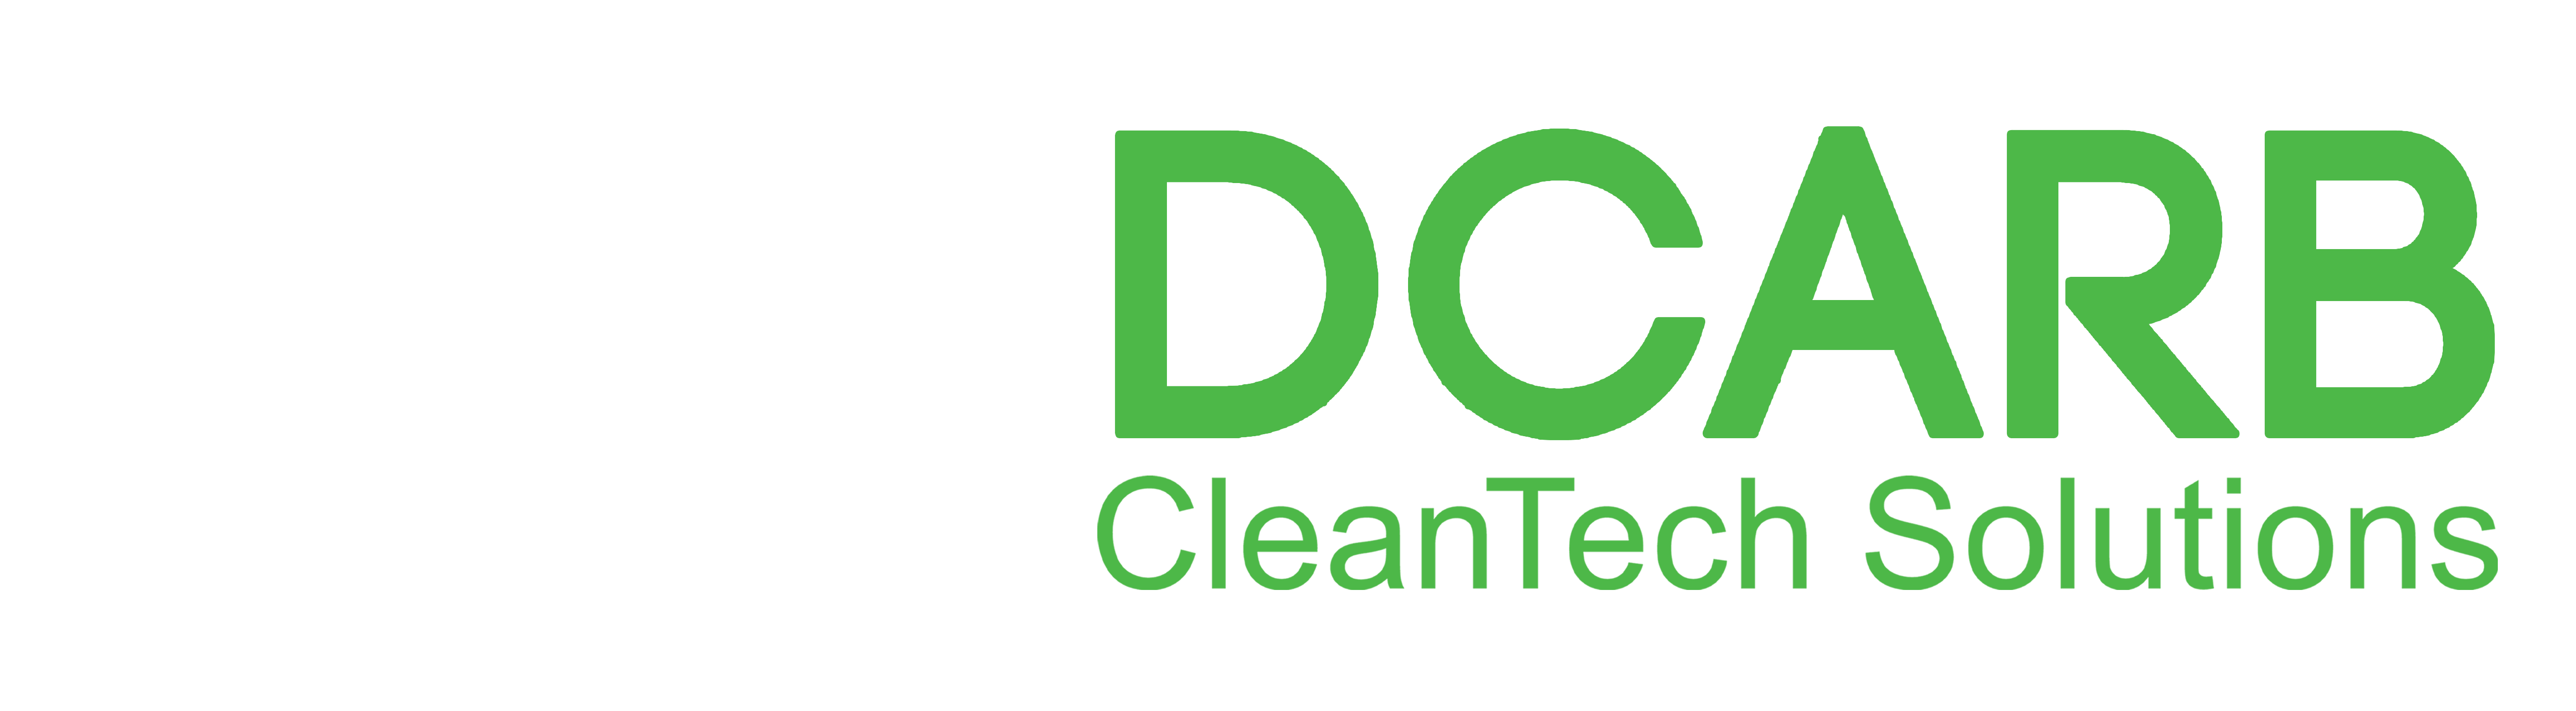 Dcarb- cleantech solutions